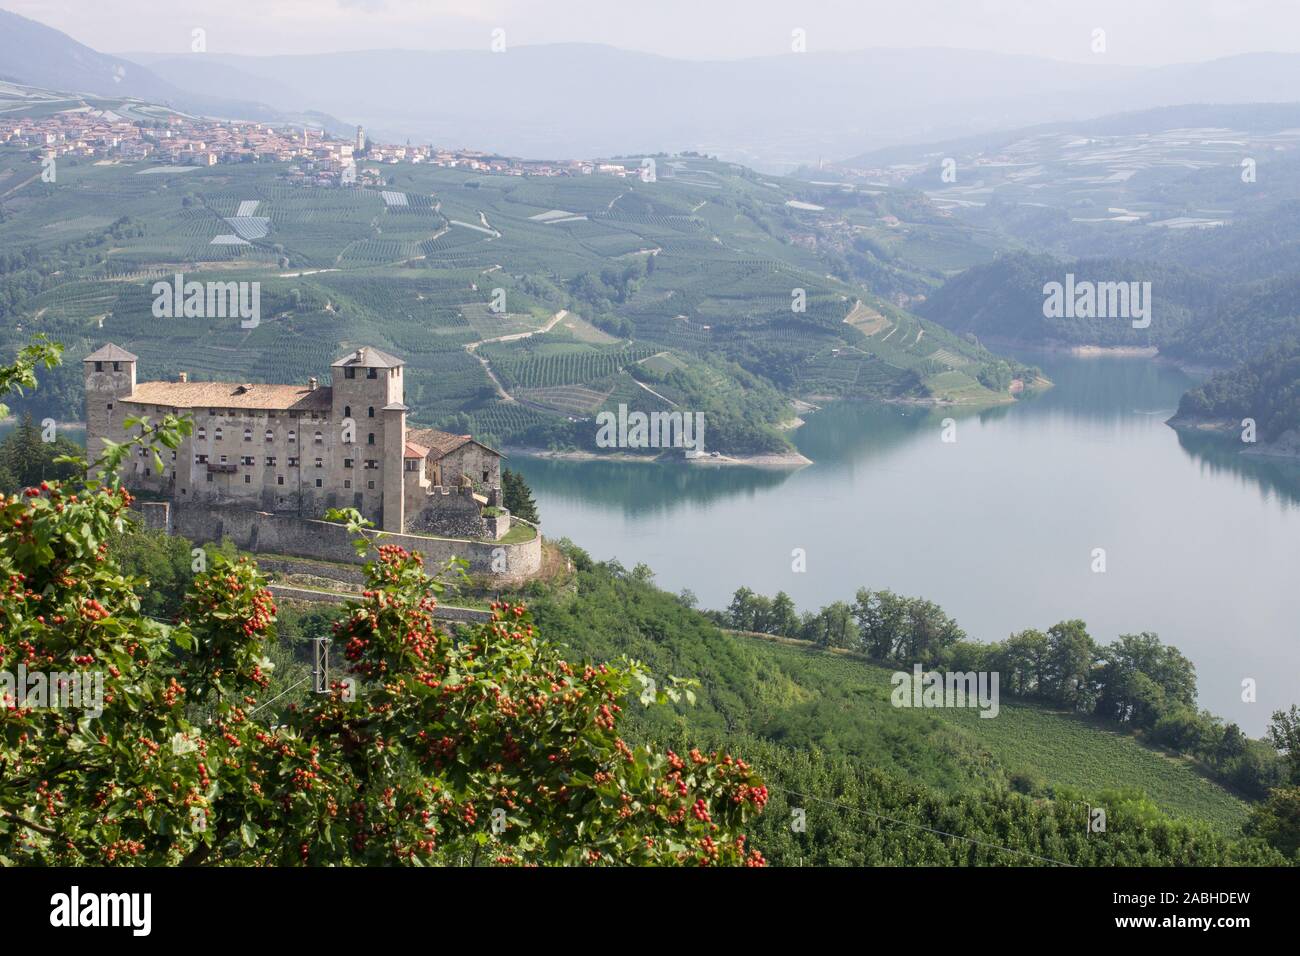 Castello di Cles e lago di Santa Giustina - Cles castle and Santa Giustina lake Stock Photo